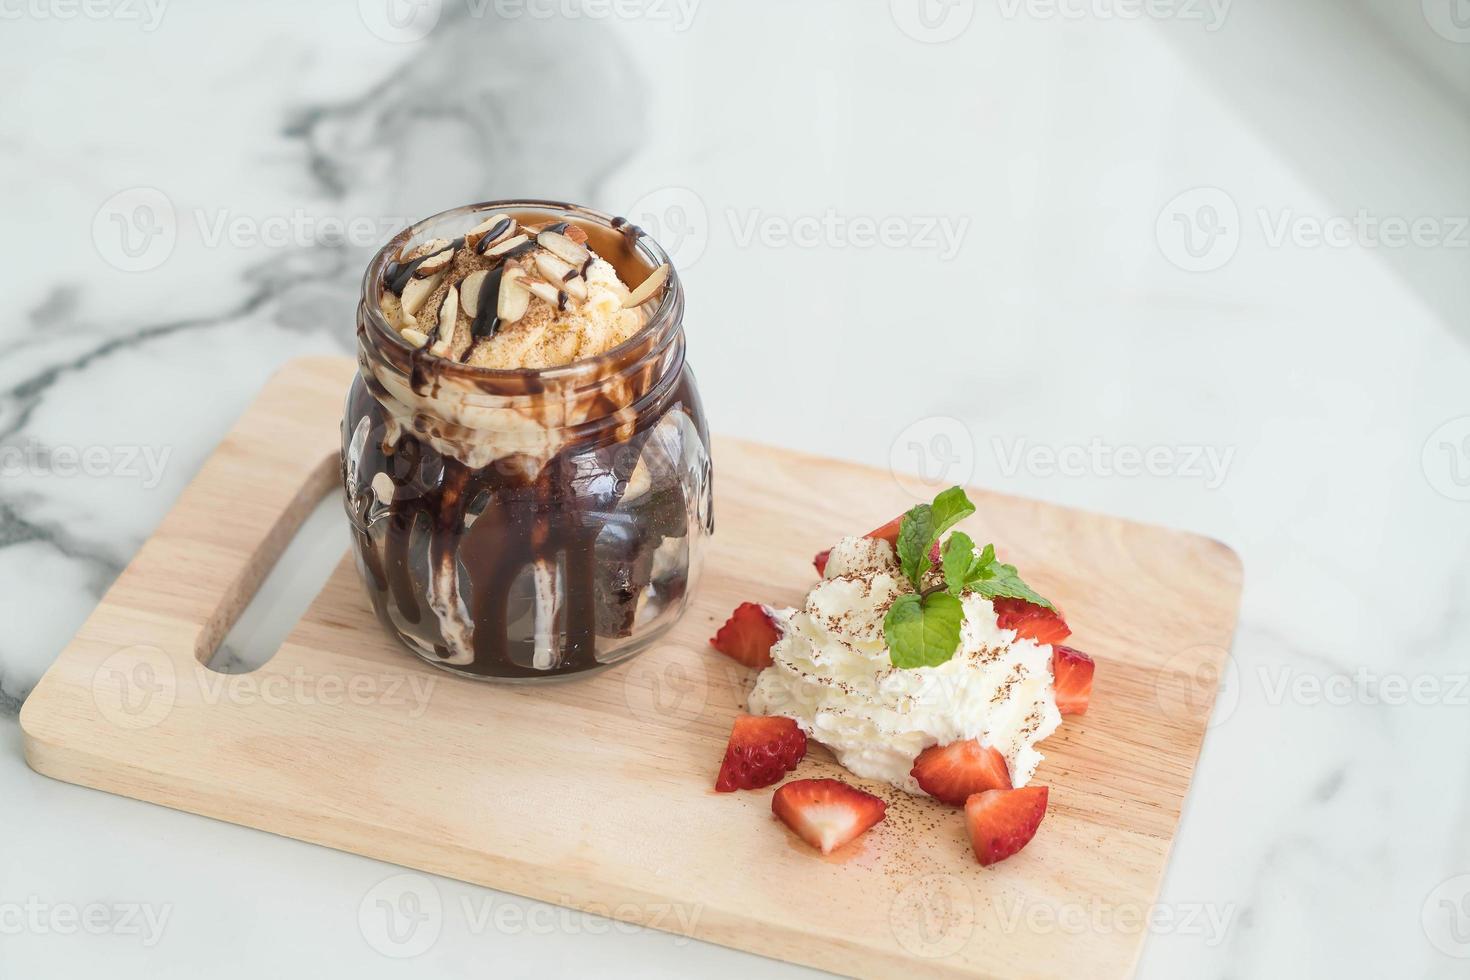 brownies de chocolate com sorvete de baunilha, chantilly e morango foto